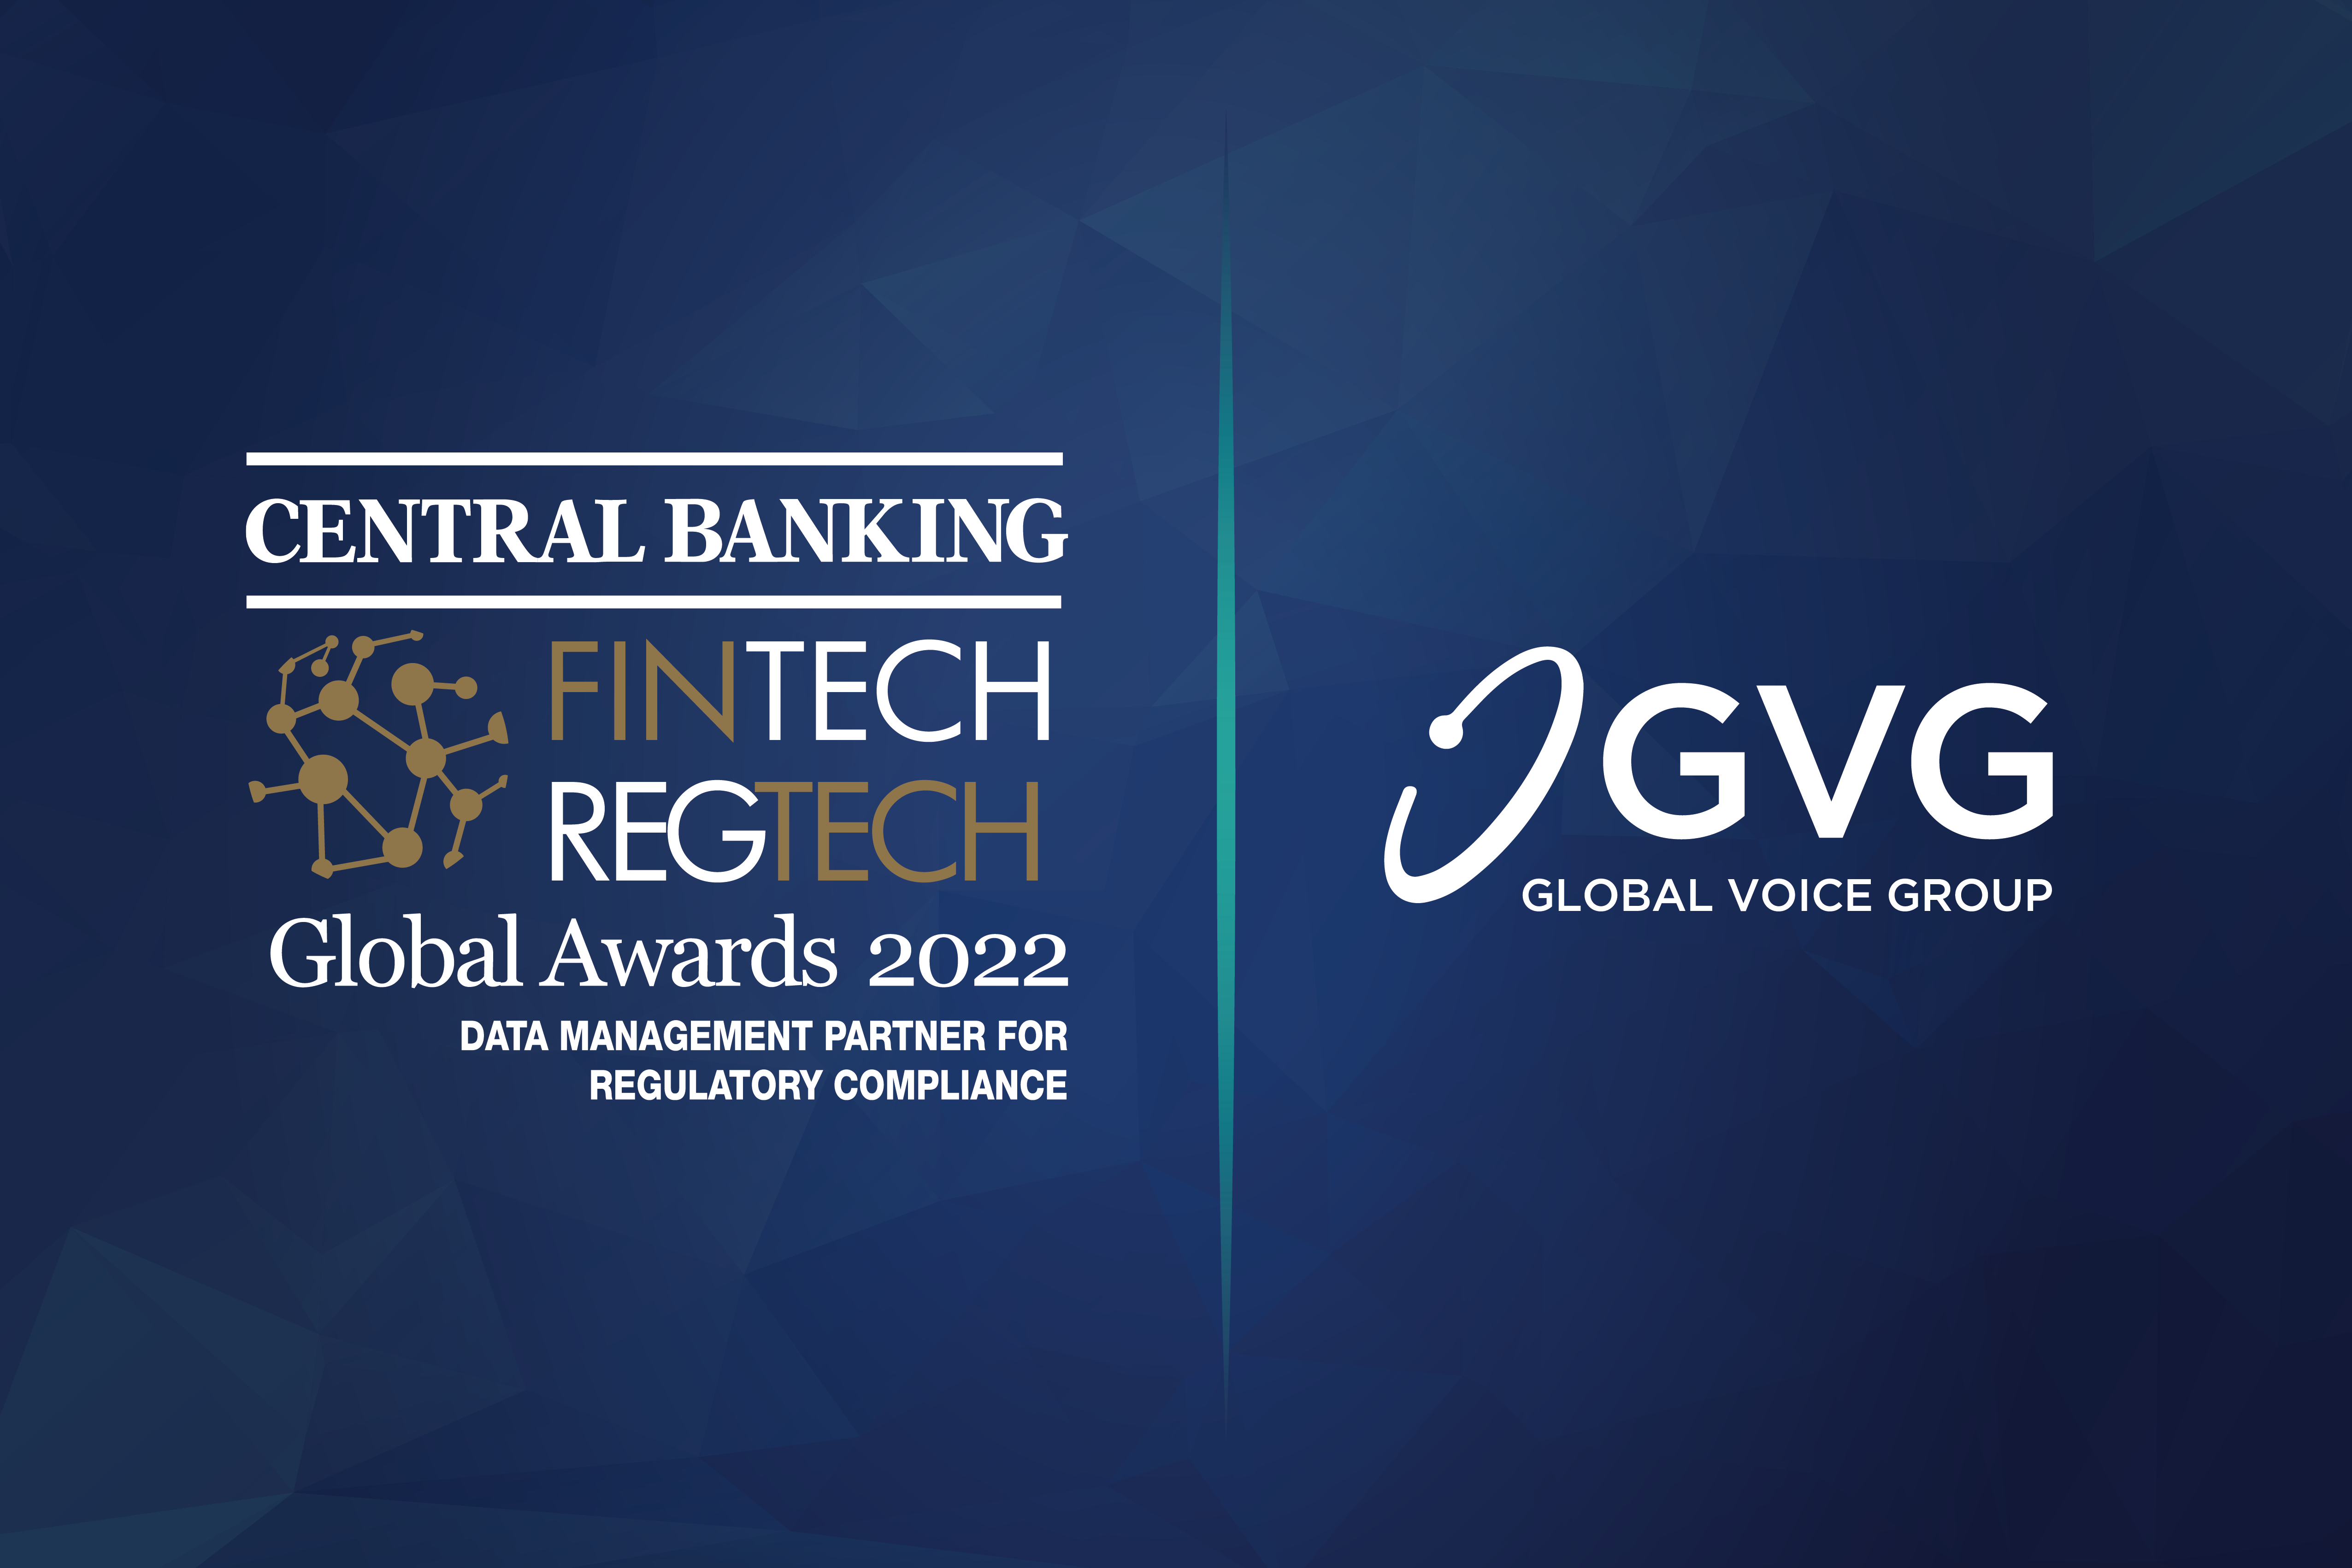 Central Banking’s Fintech & Regtech Global Awards